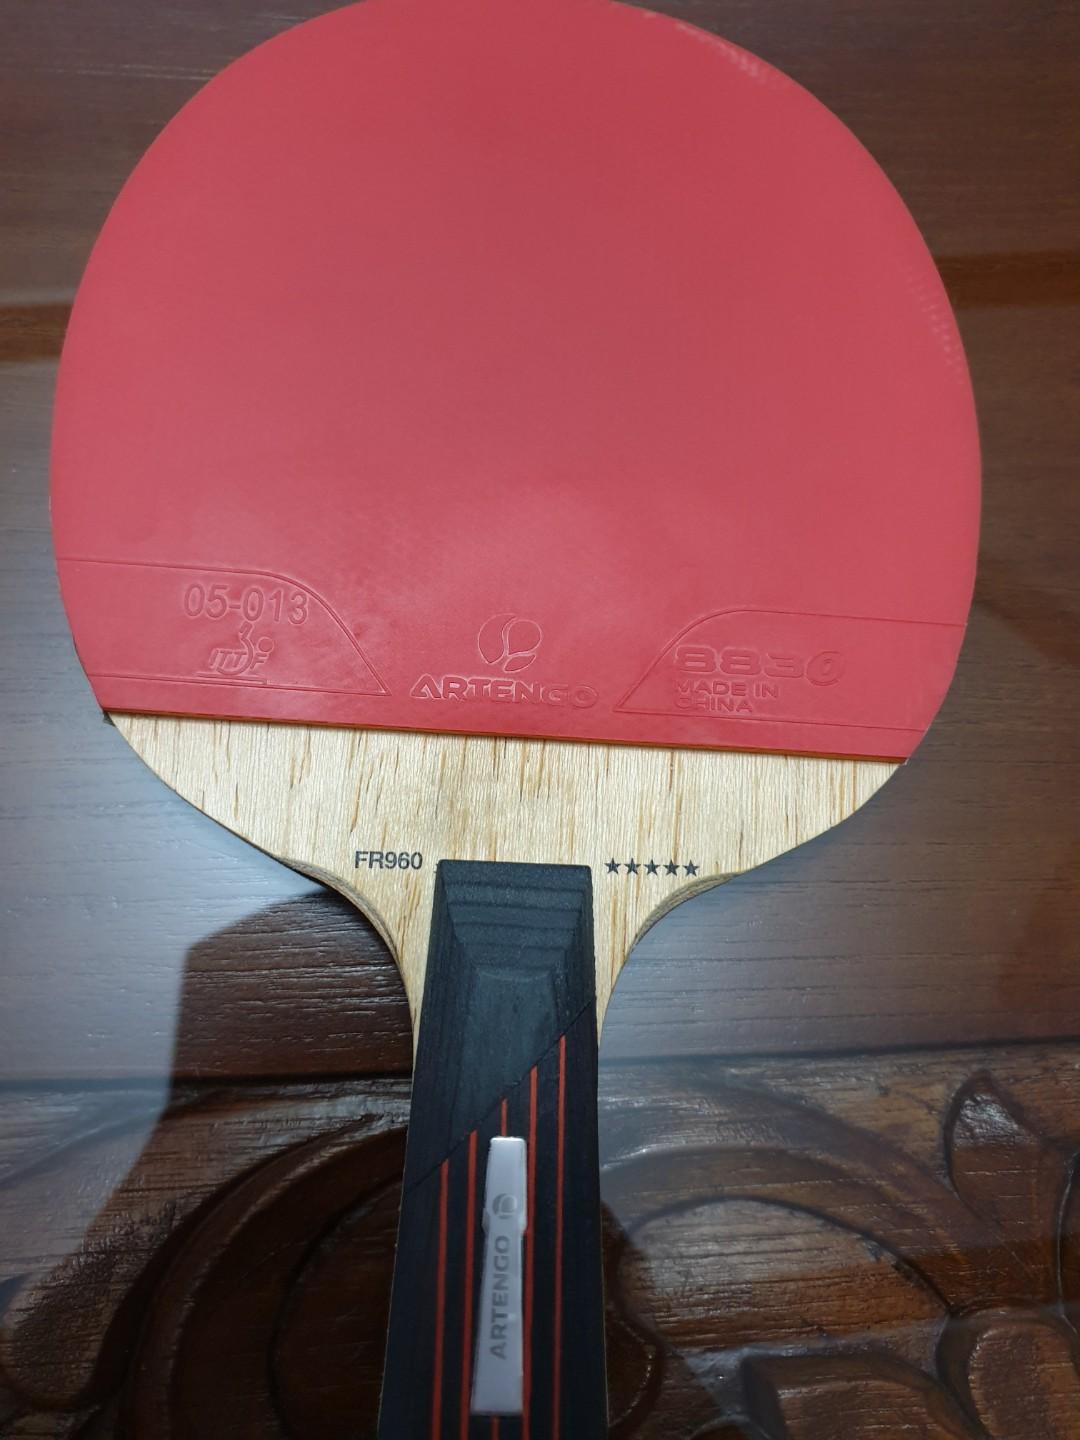 artengo table tennis bat review